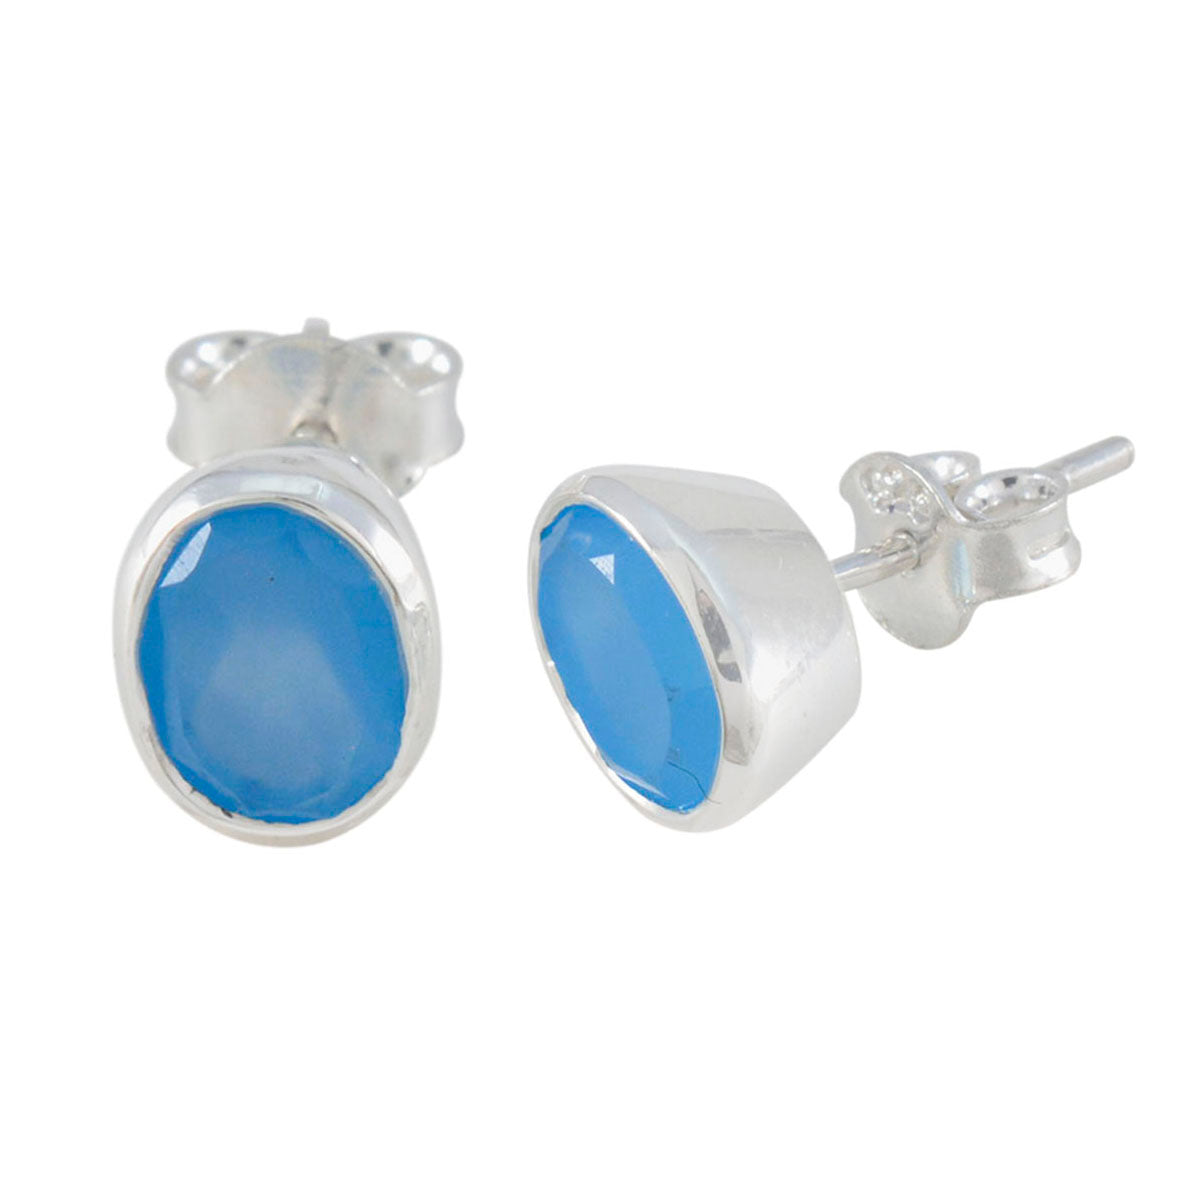 Riyo Hot Sterling Silber Ohrring für Demoiselle Blauer Chalcedon Ohrring Lünettenfassung Blauer Ohrring Ohrstecker